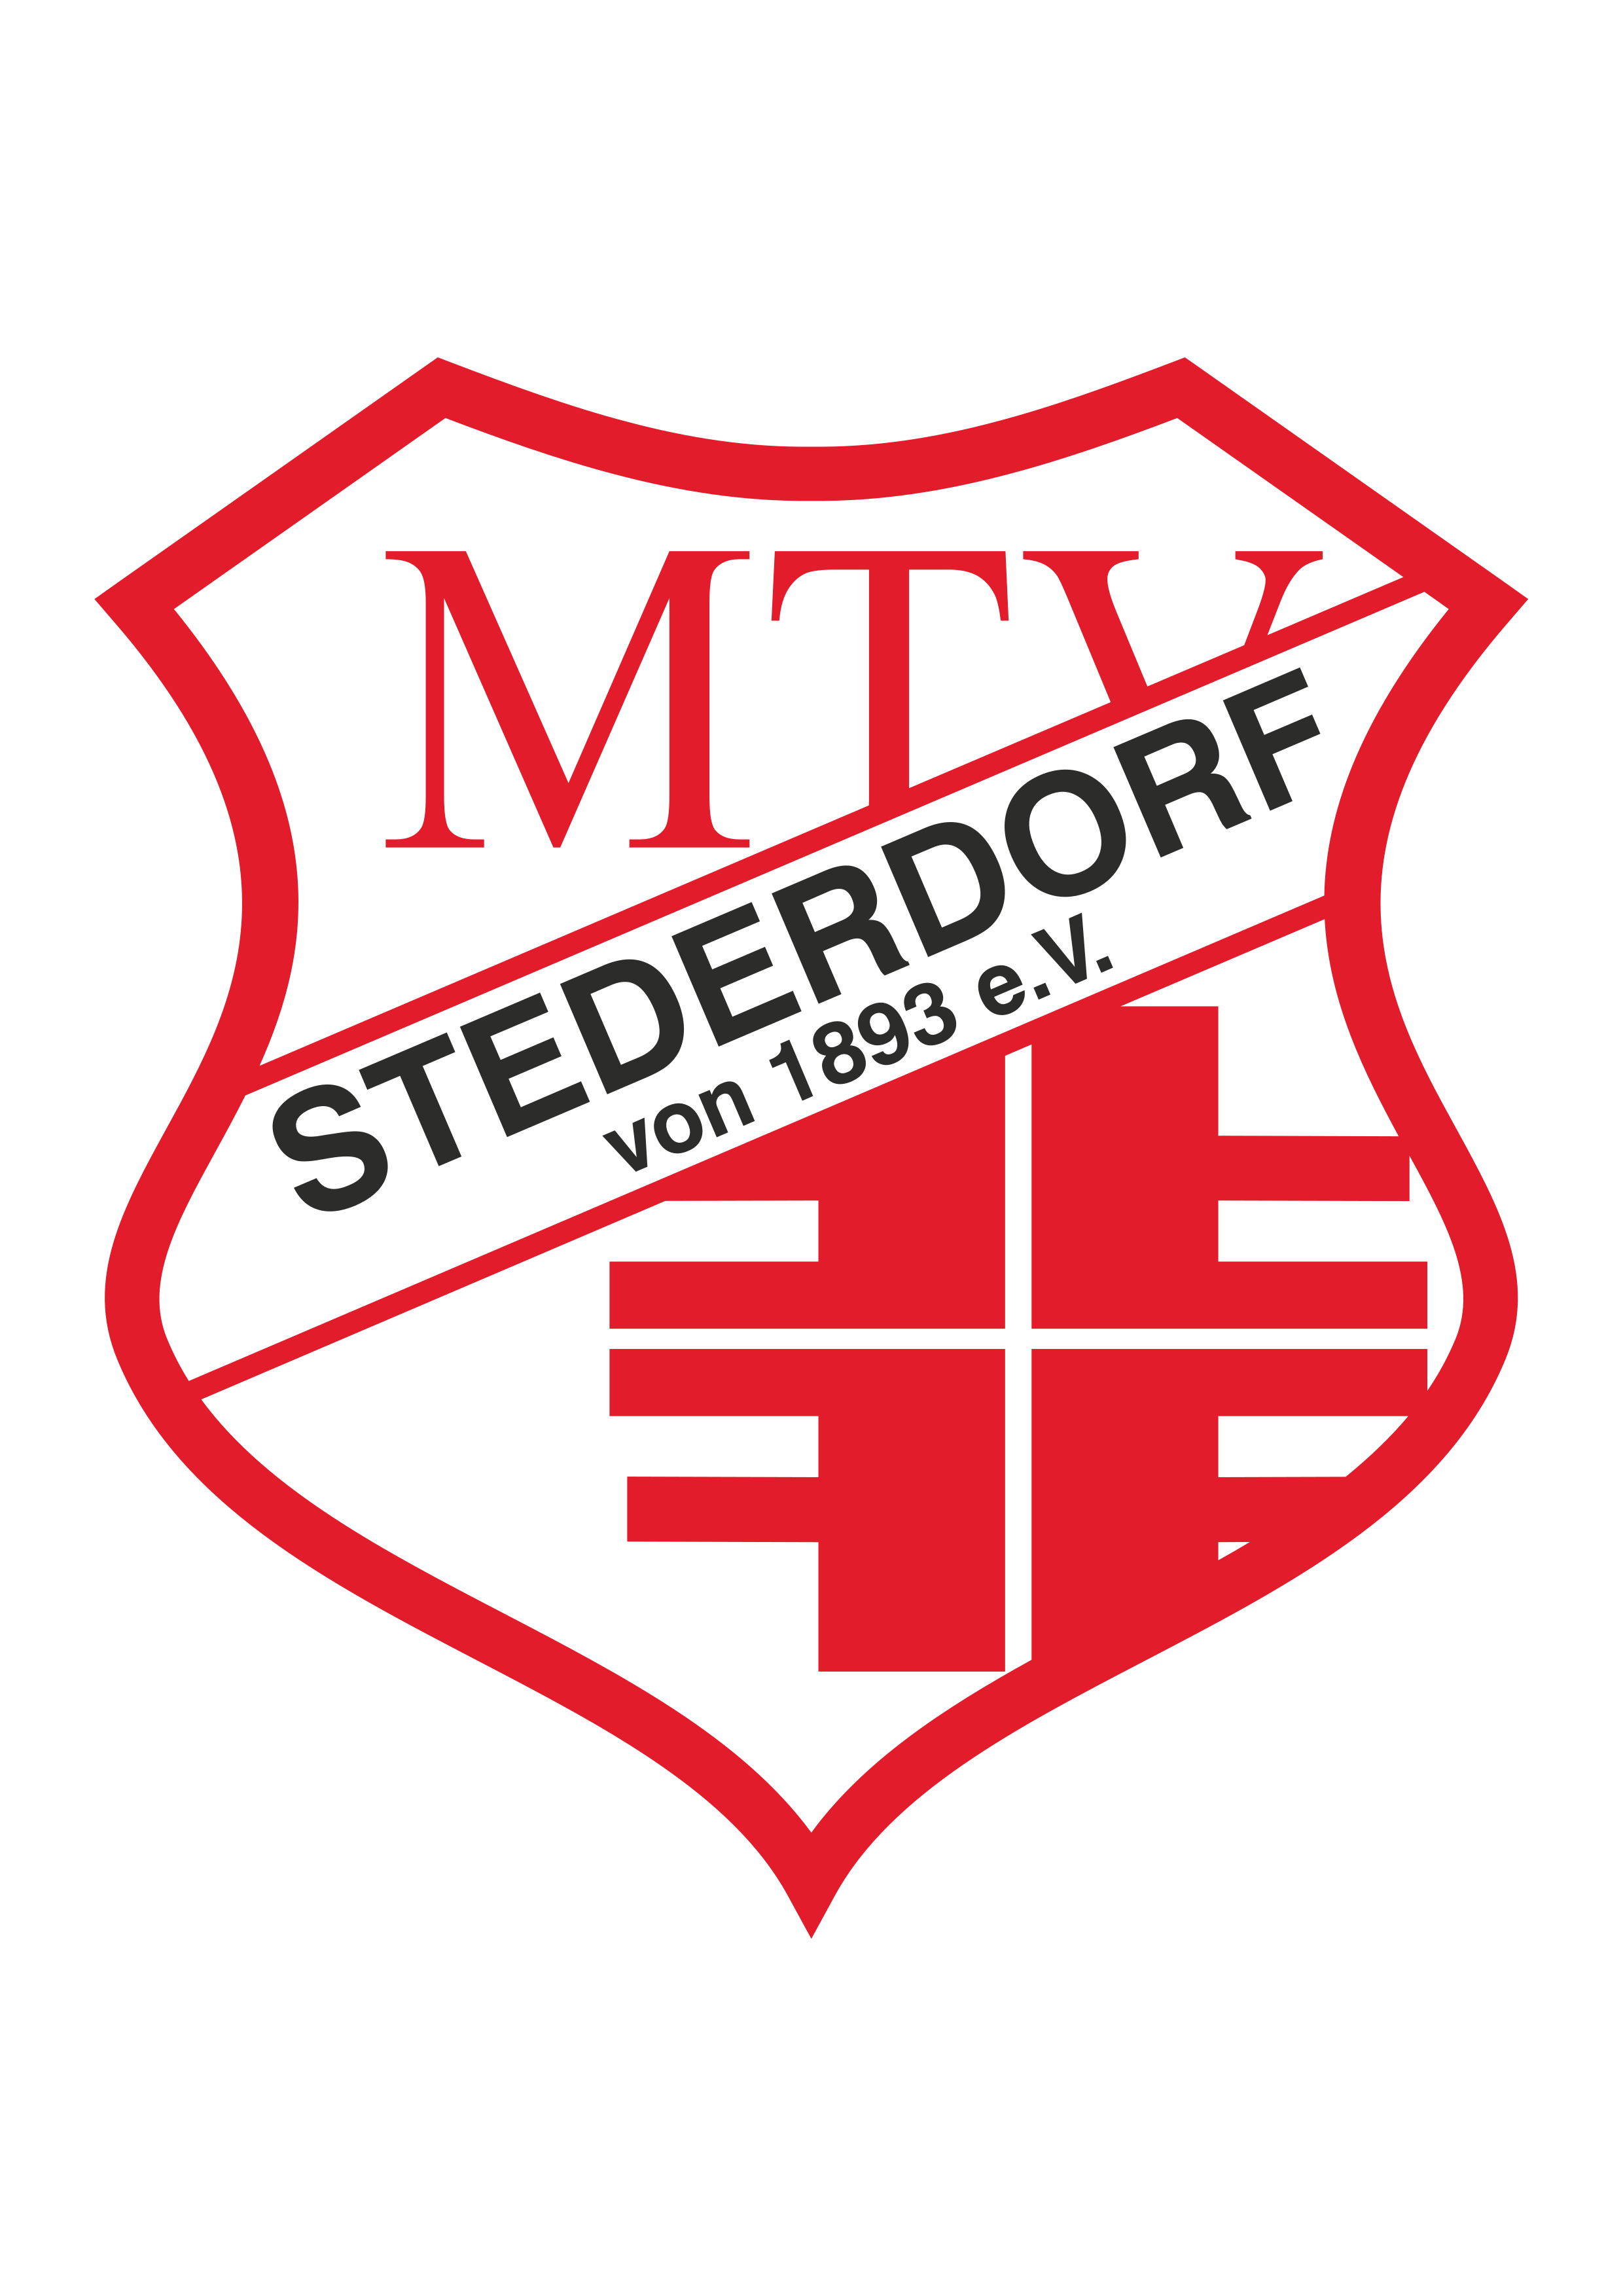 MTV Stederdorf von 1893 e.V.